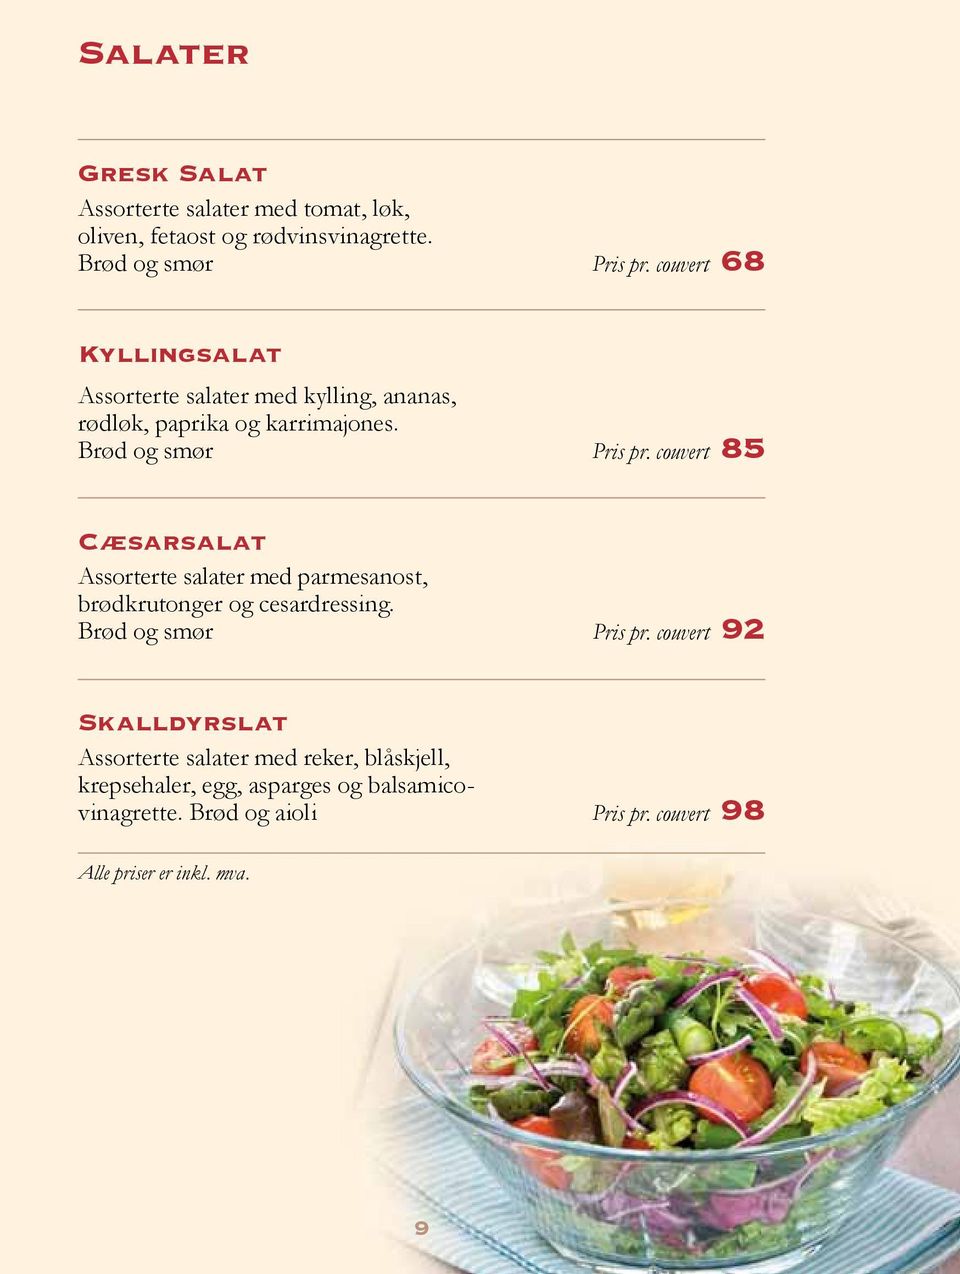 couvert 85 Cæsarsalat Assorterte salater med parmesanost, brødkrutonger og cesardressing. Brød og smør Pris pr.